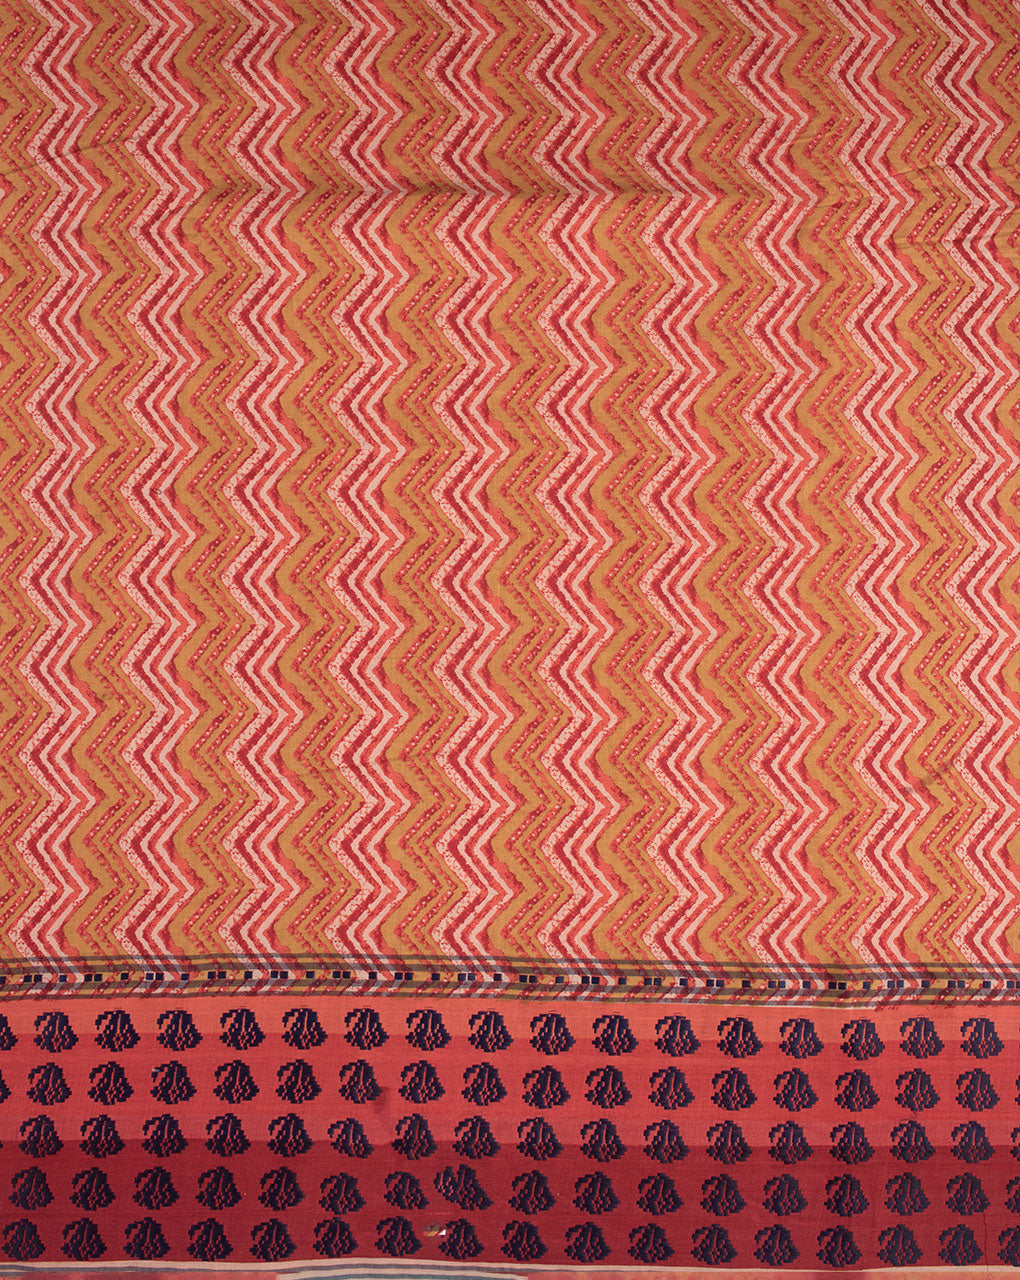 60s (92 x 80) Cotton Modal Fabric